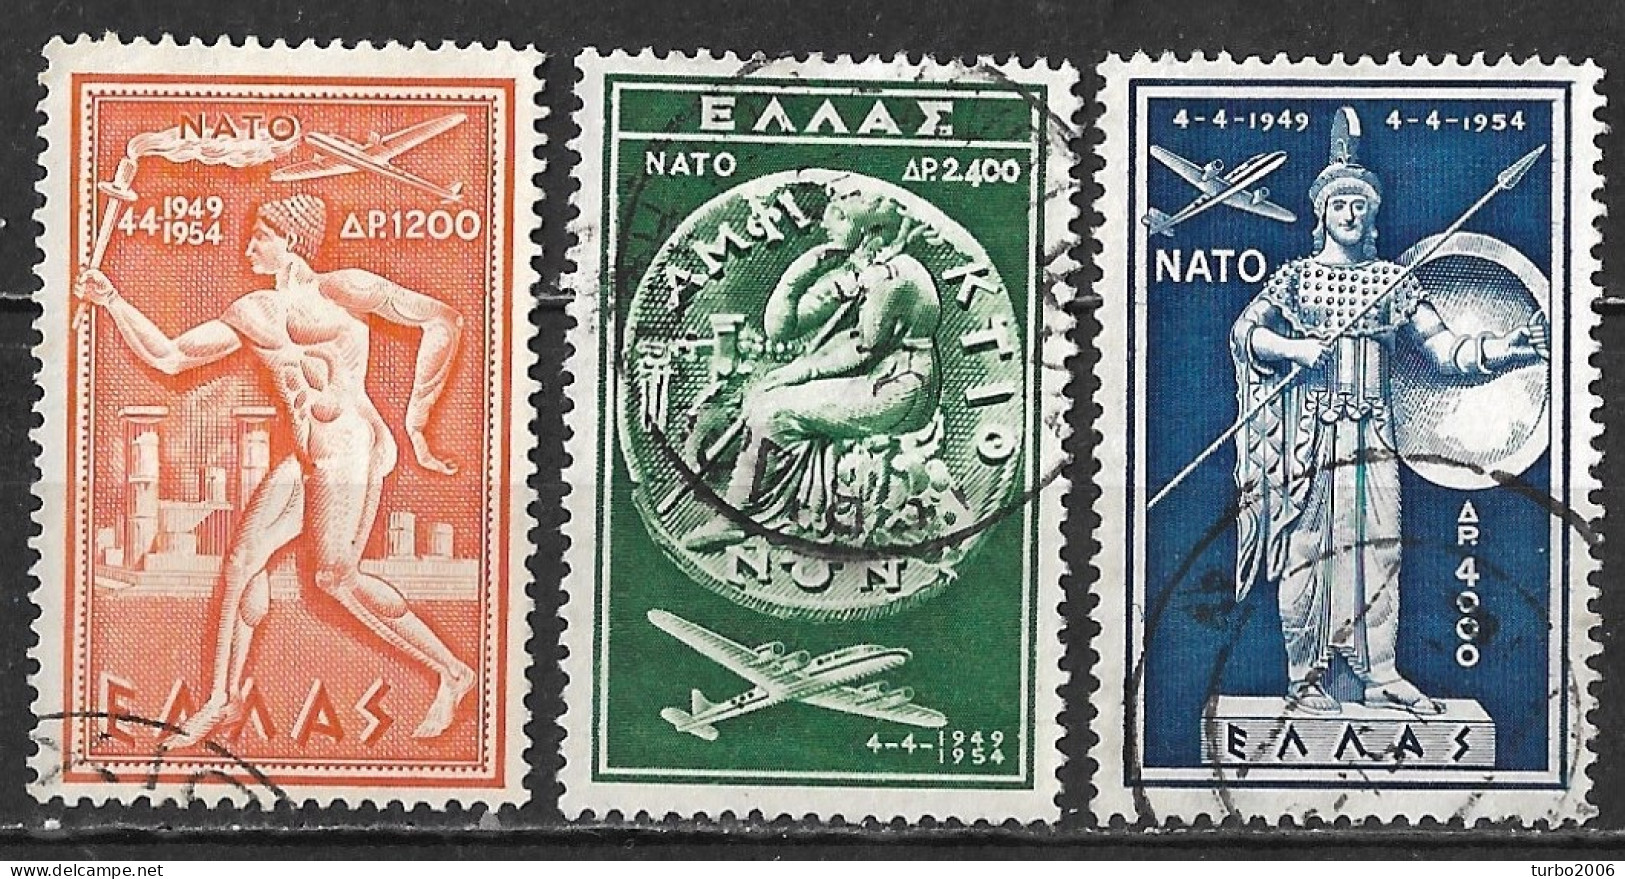 GREECE 1954 5th Anniversary Of NATO Complete Used Set Vl. A 70 / A 72 - Usati